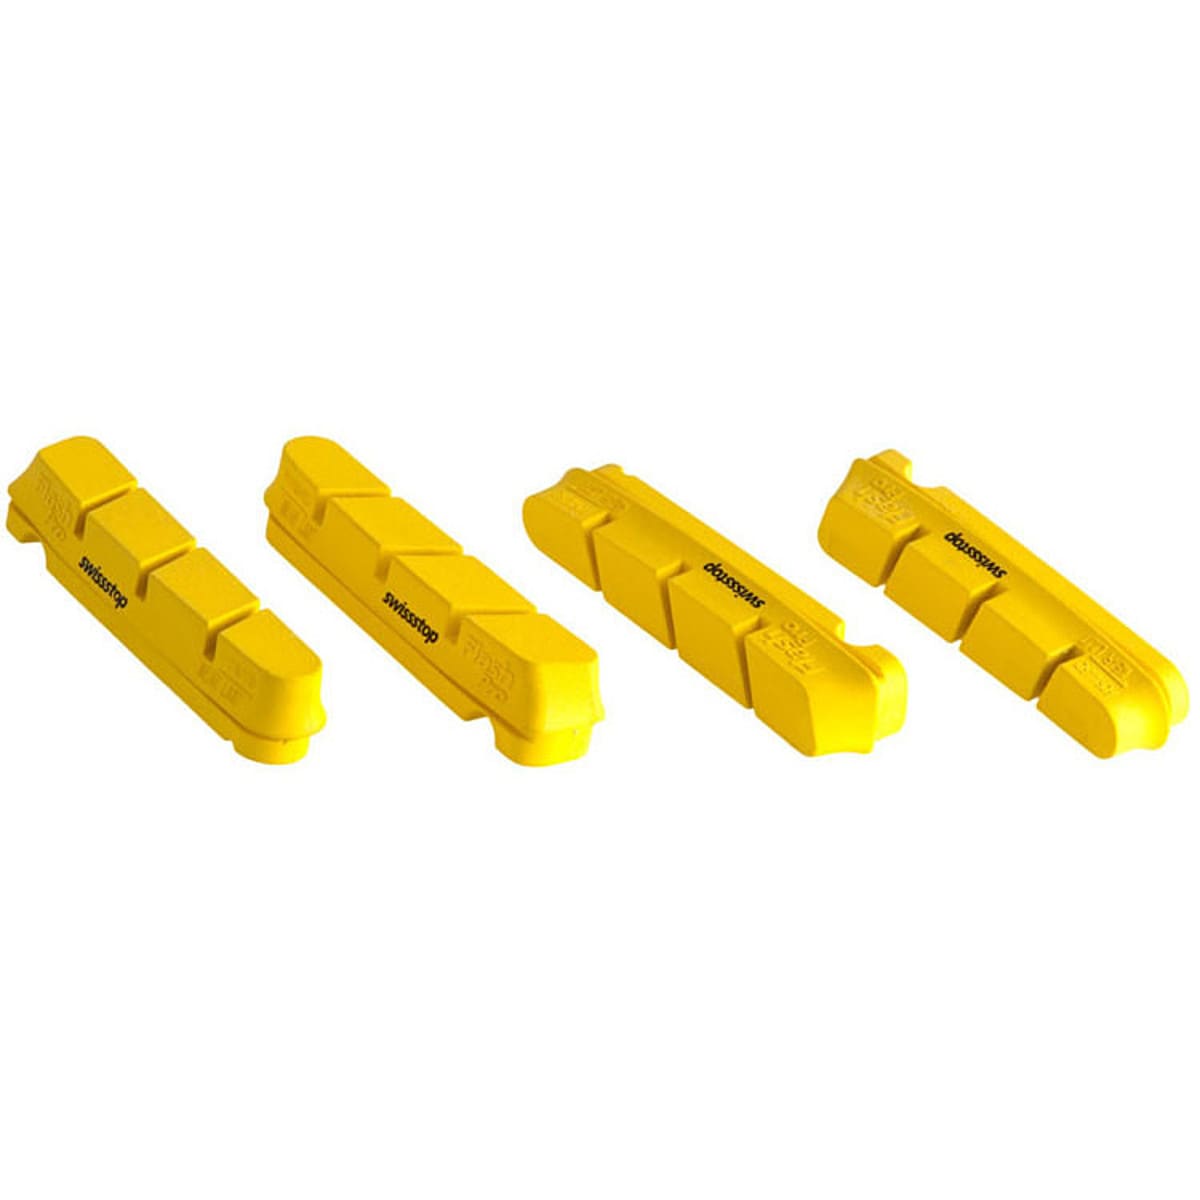 SwissStop FlashPro Yellow King Brake Pad - 2-Pack